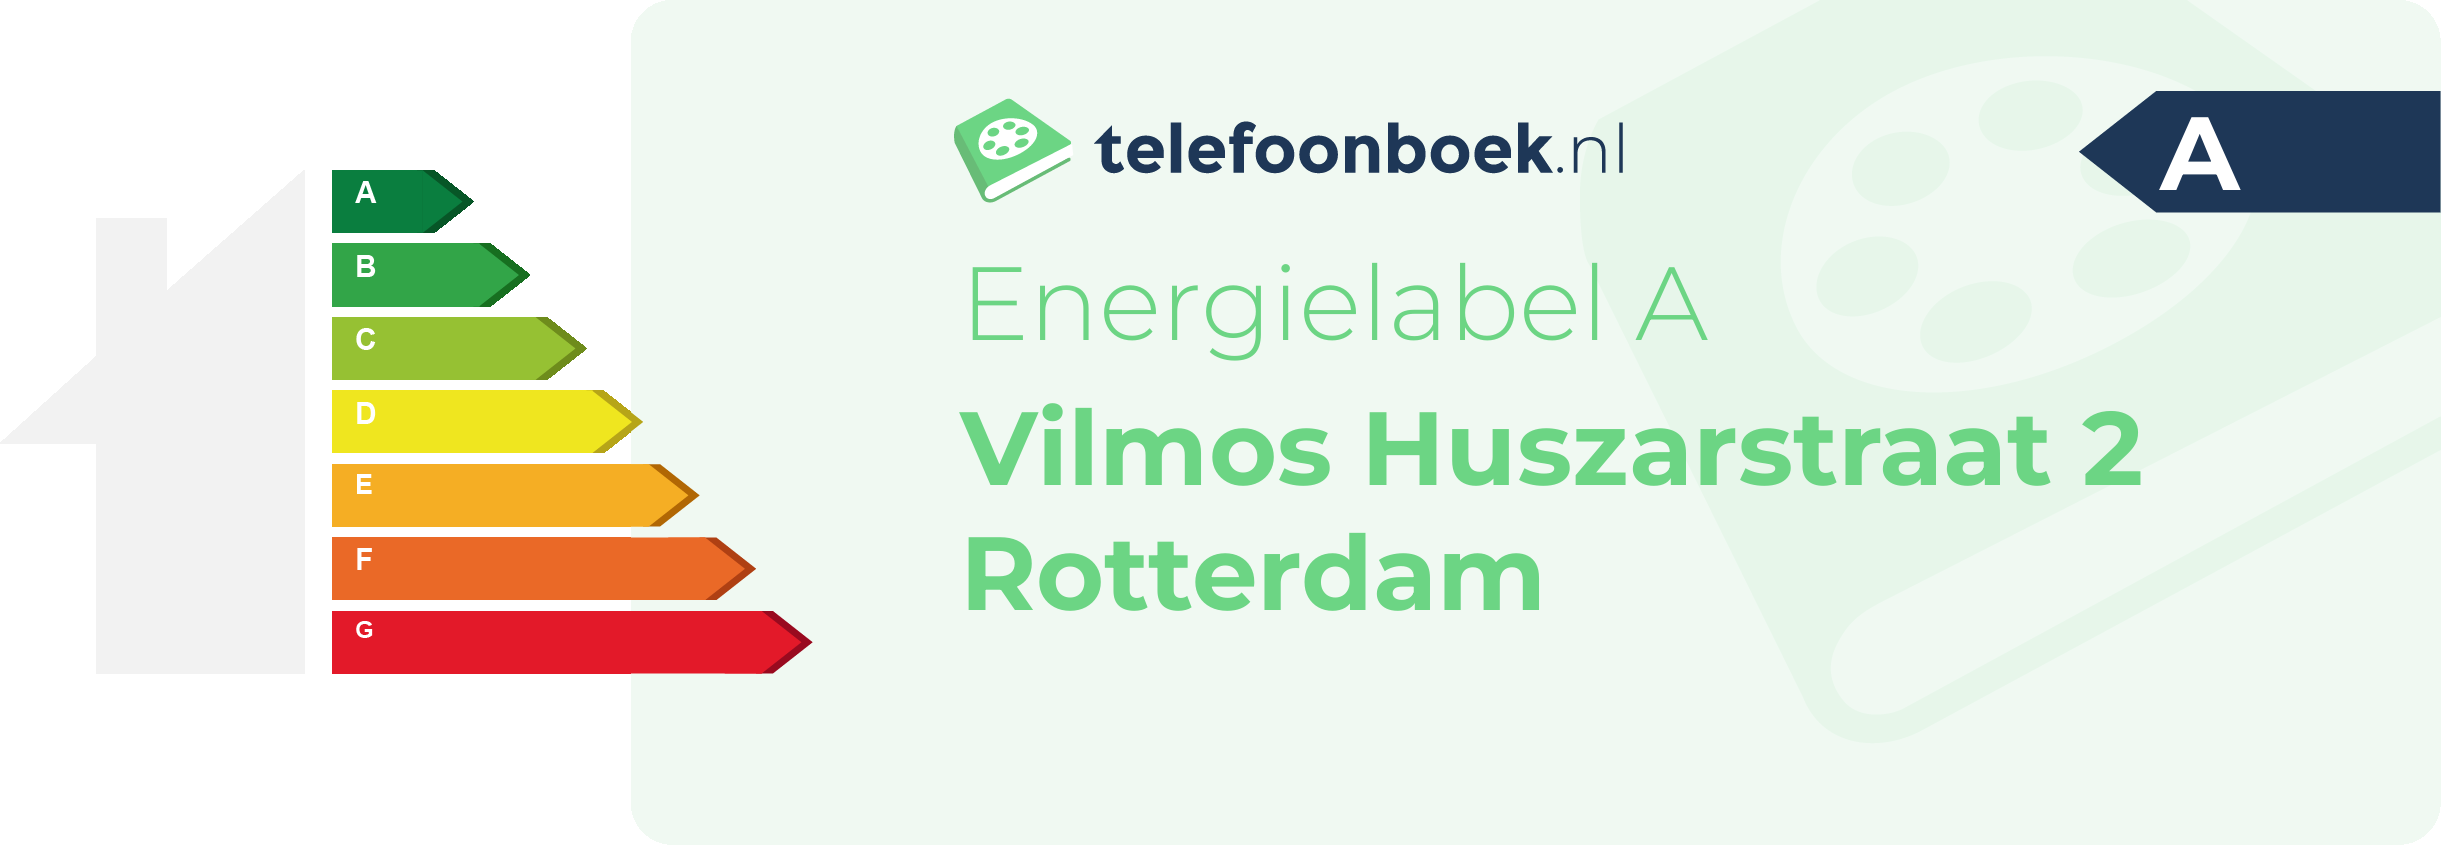 Energielabel Vilmos Huszarstraat 2 Rotterdam